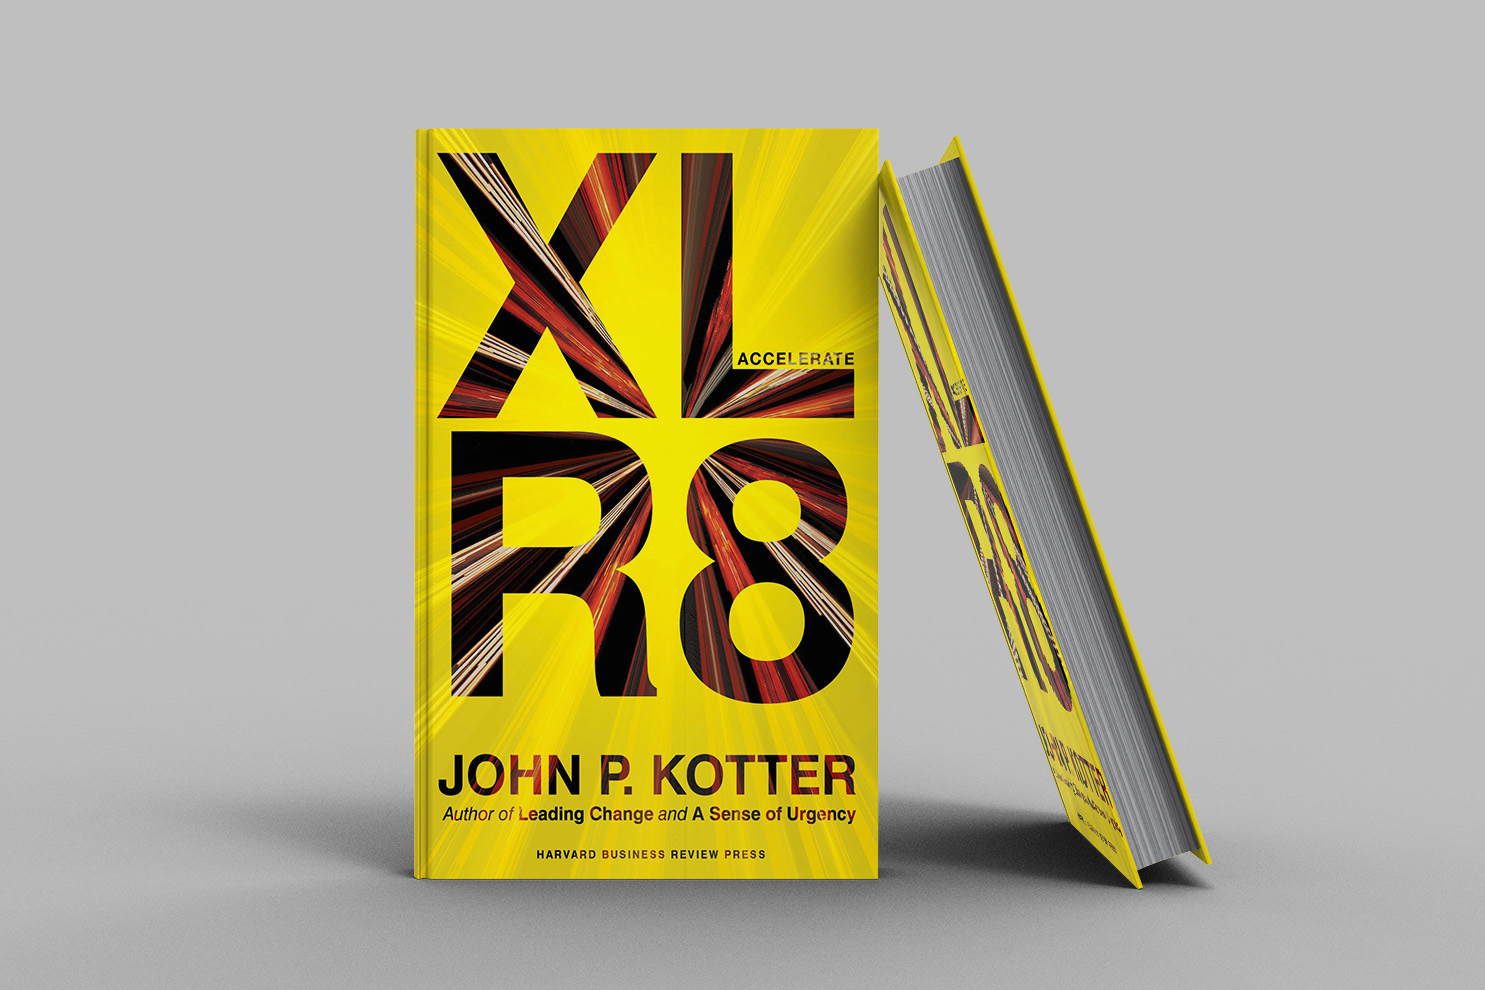 XLR8 by John P. Kotter